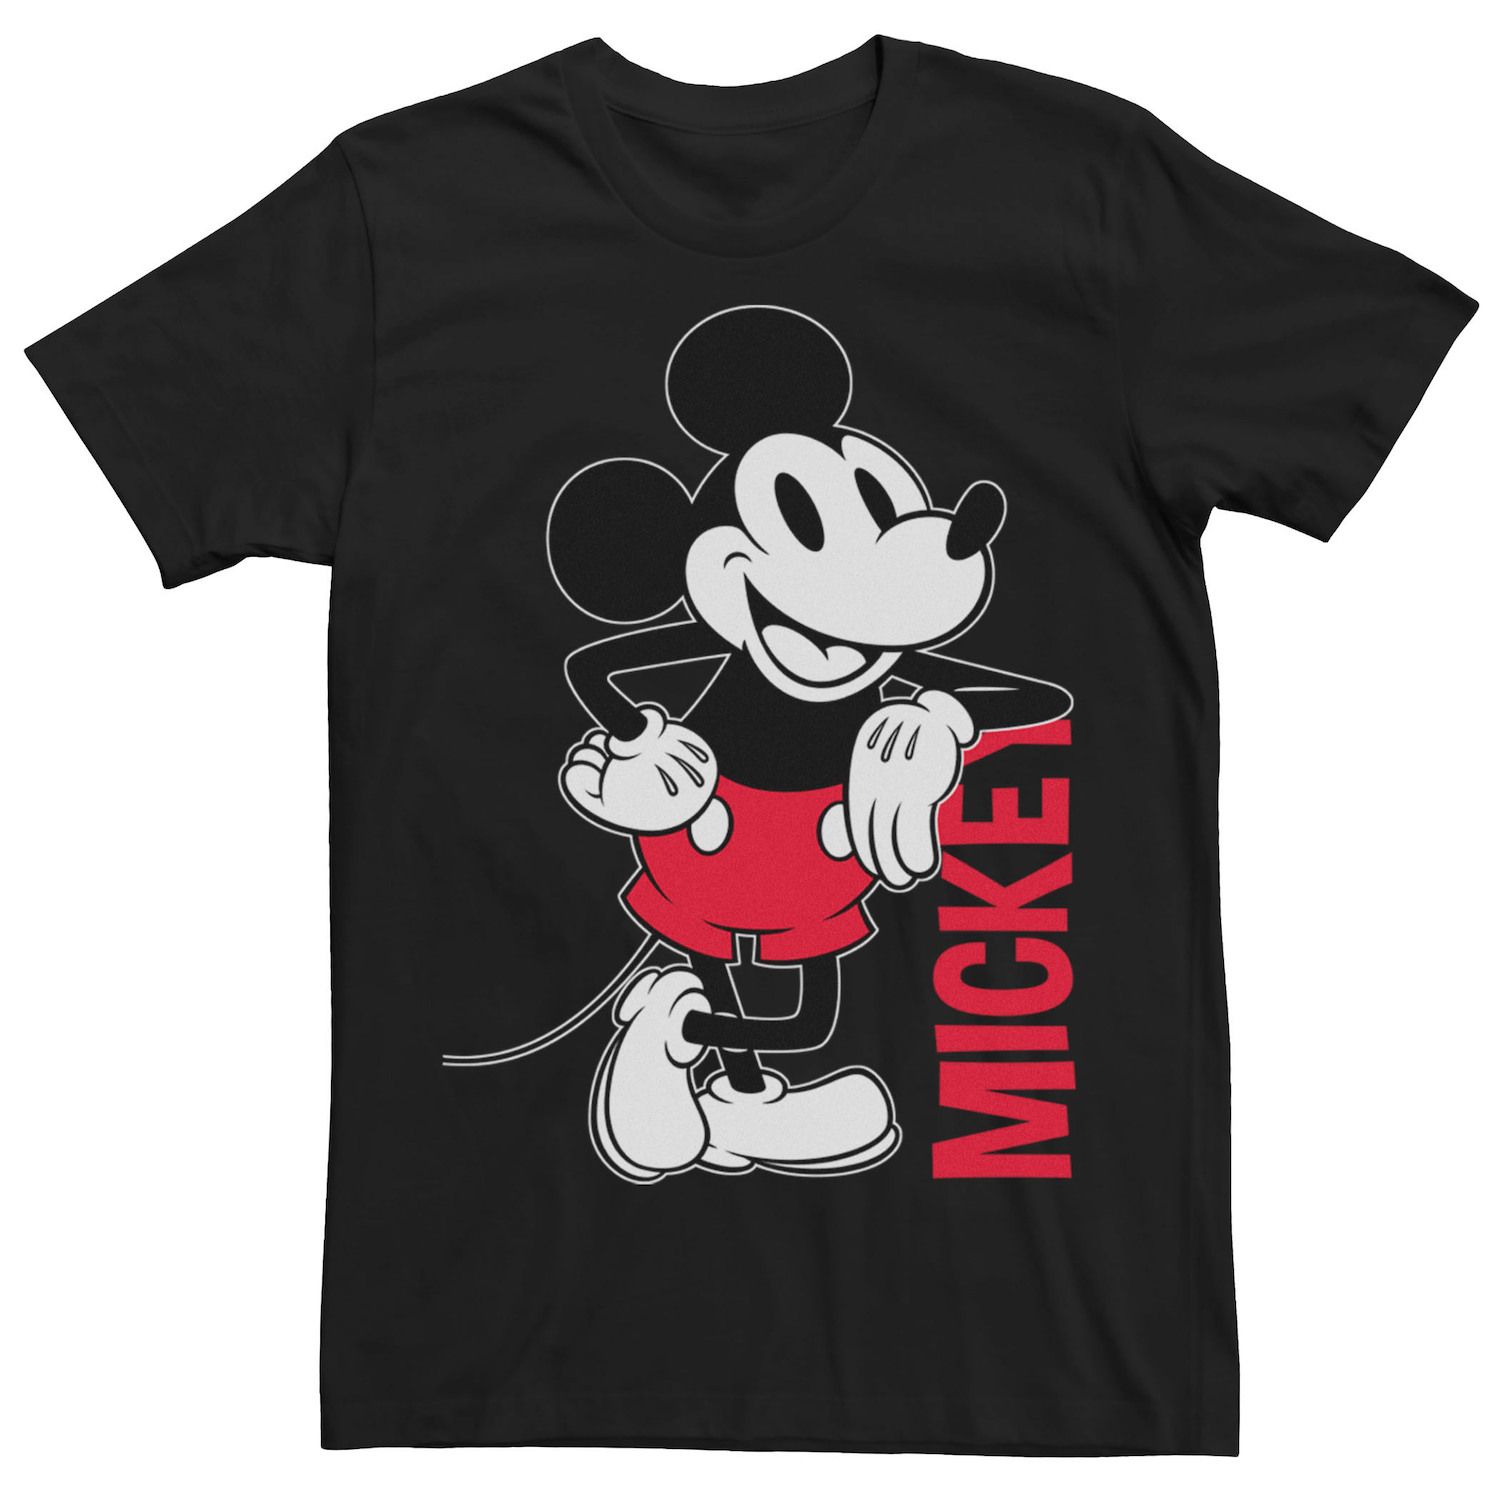 Мужская винтажная футболка с Микки Маусом и контуром Микки Мауса Disney футболка с градиентным контуром микки мауса disney серый